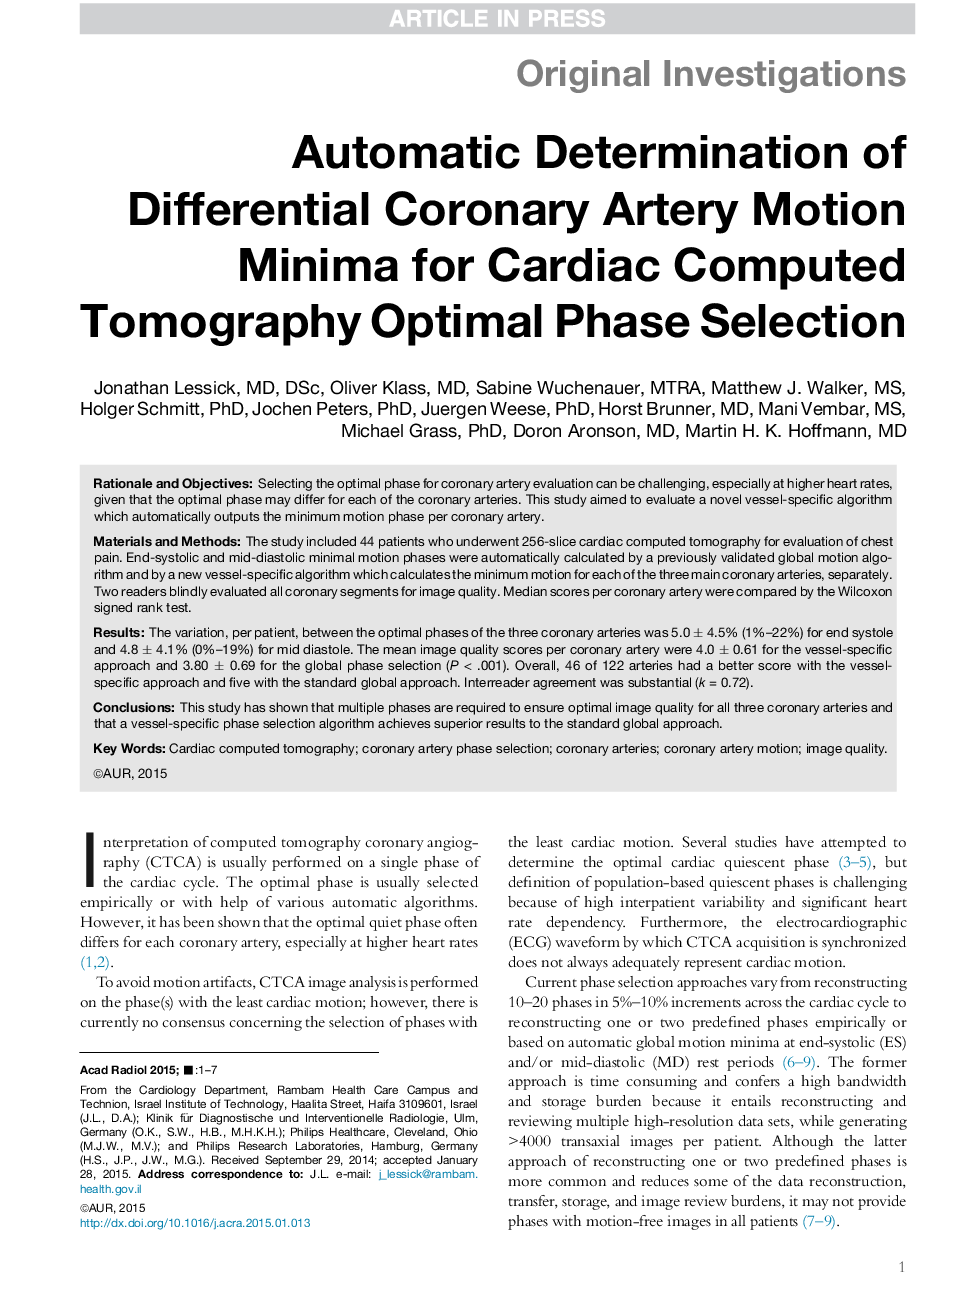 تعیین خودکار اندازه حداقل حرکت عروق کرونر دیفرانسیل برای انتخاب فاز مناسب توموگرافی کامپیوتری قلبی 